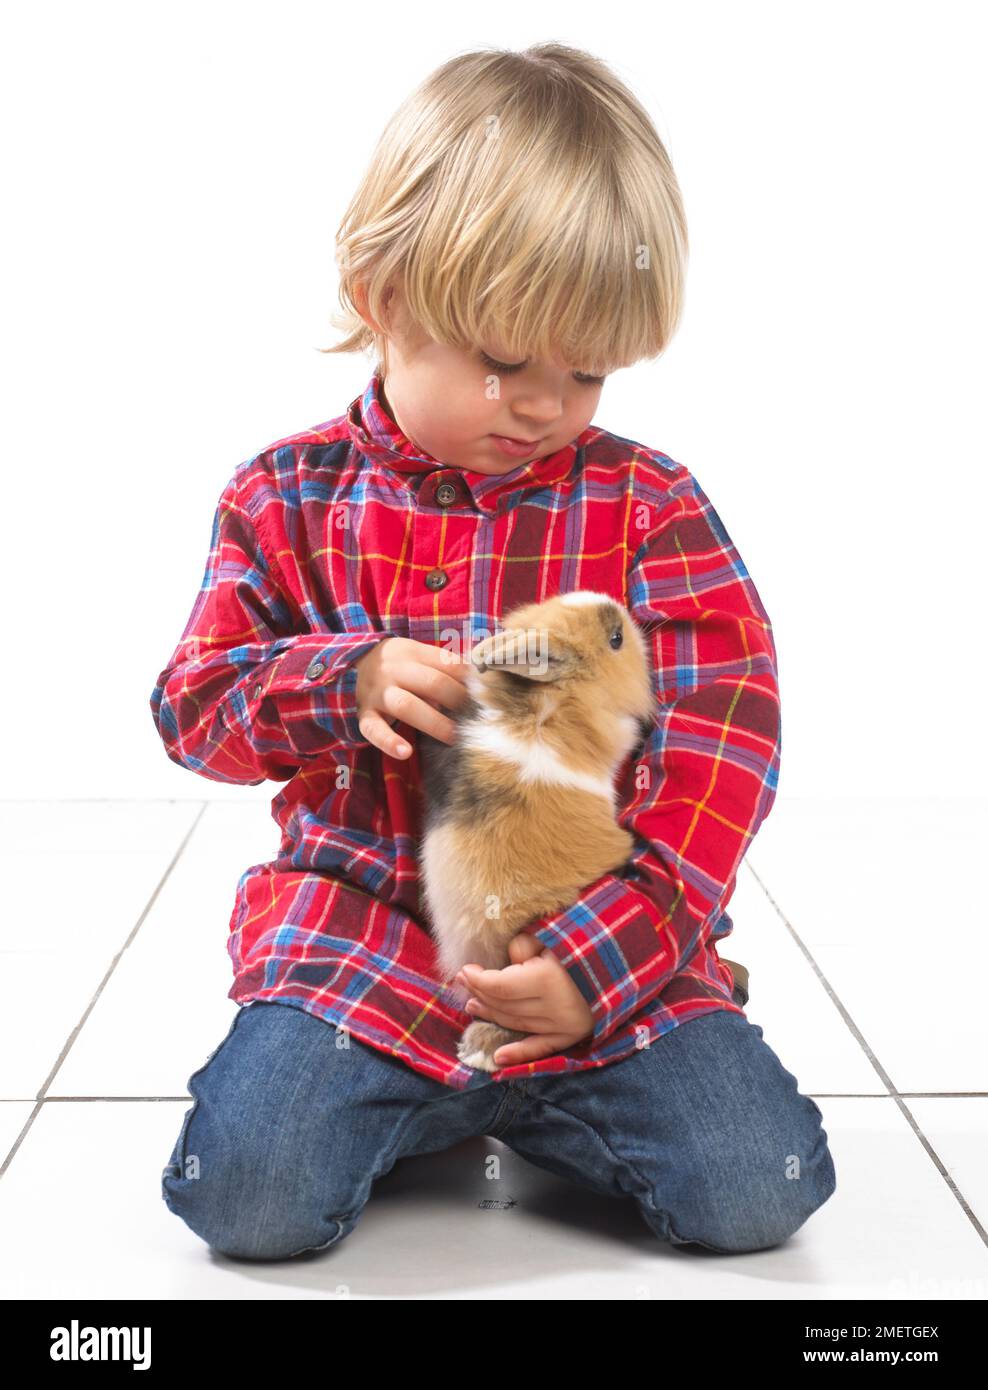 Jeune garçon assis tenant un lapin, 2 ans Banque D'Images